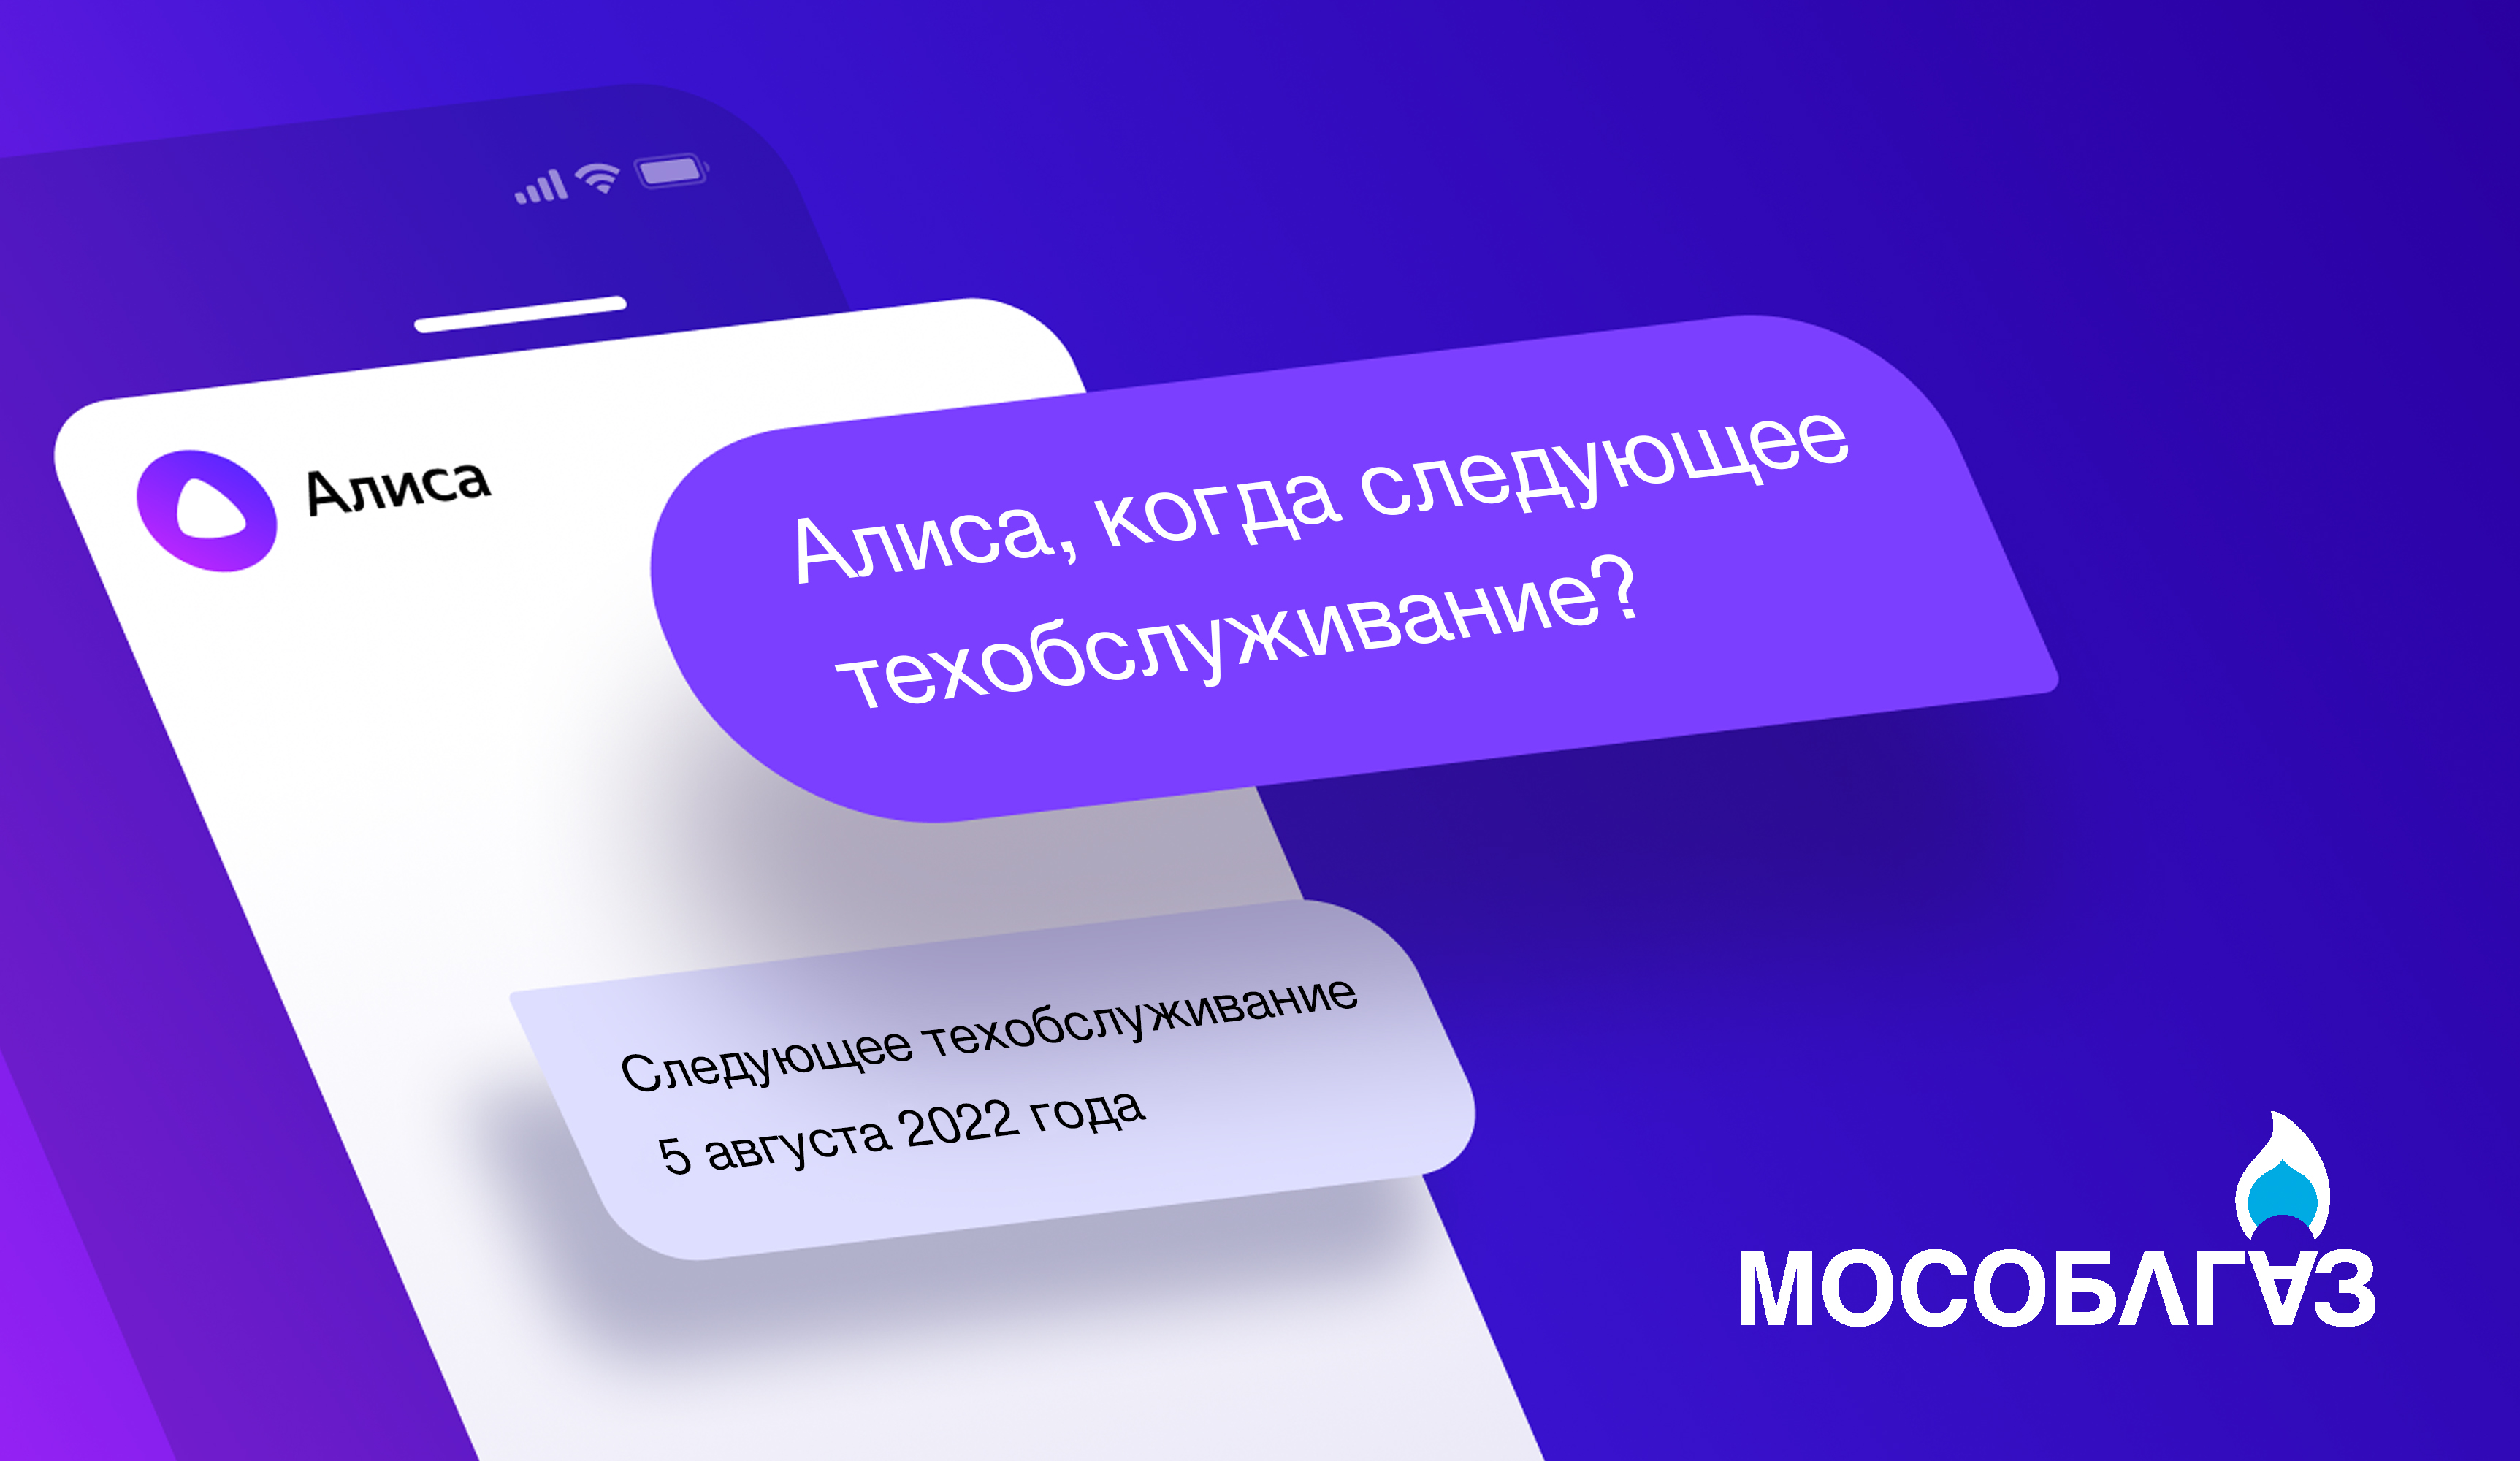 Мособлгаз познакомил своих абонентов с новым виртуальным помощником – «Алисой» от Яндекс